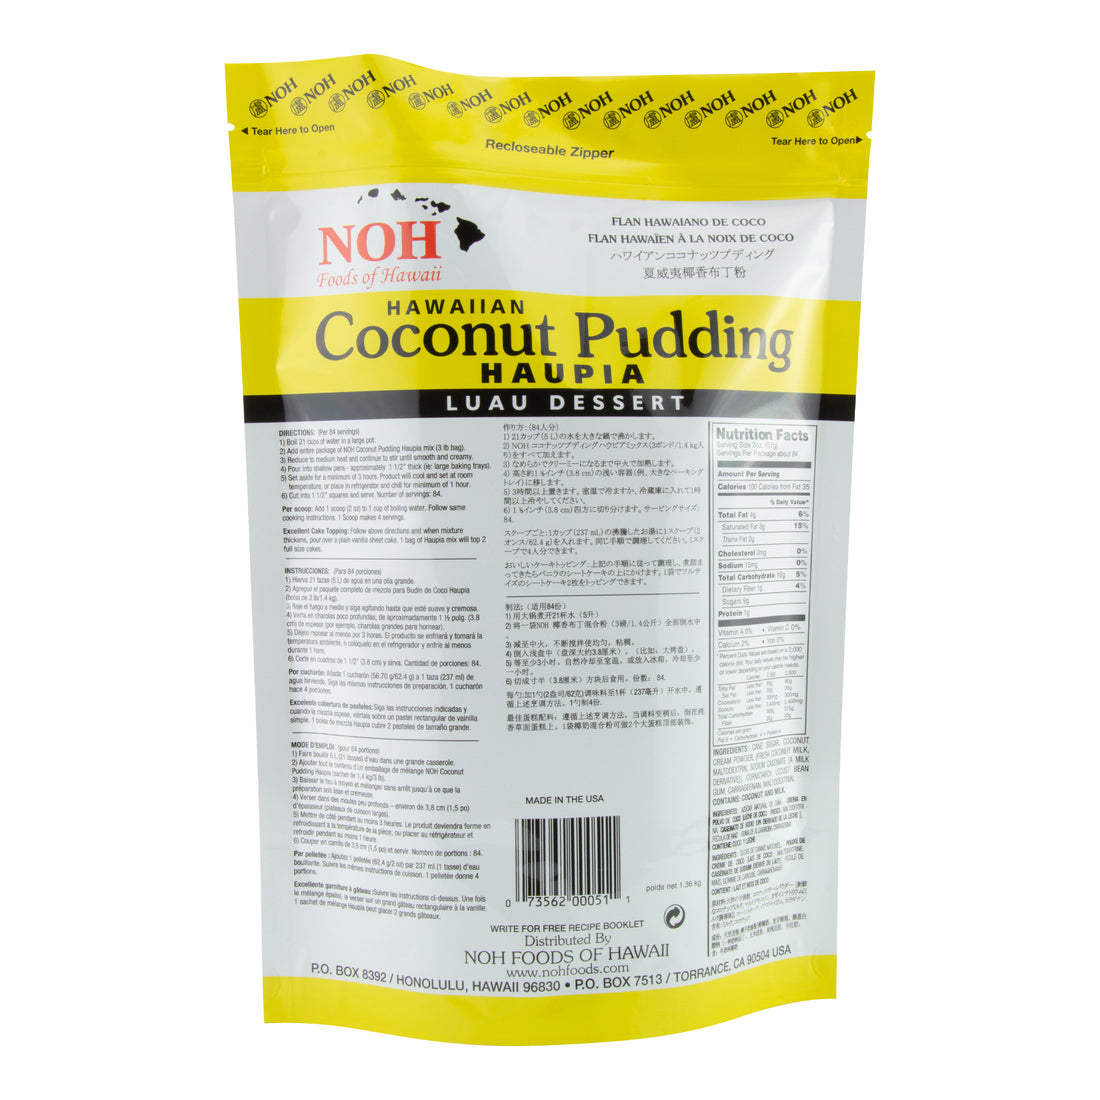 NOH Coconut Pudding Haupia 3 Lb Bulk